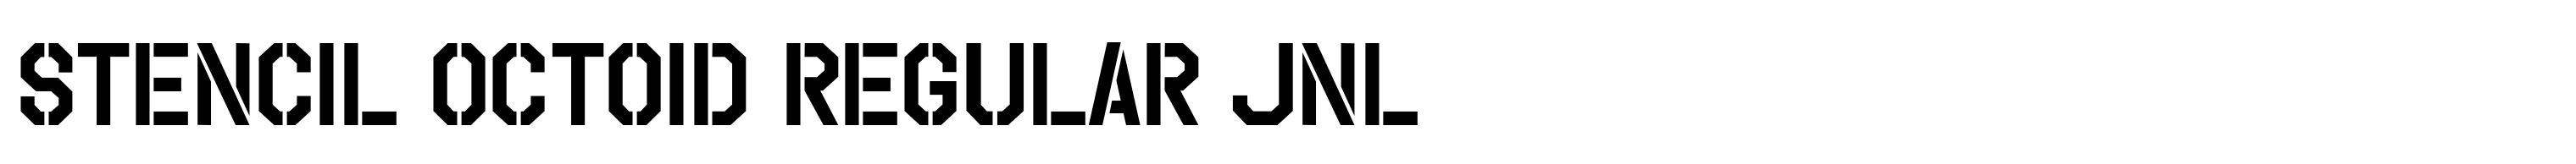 Stencil Octoid Regular JNL